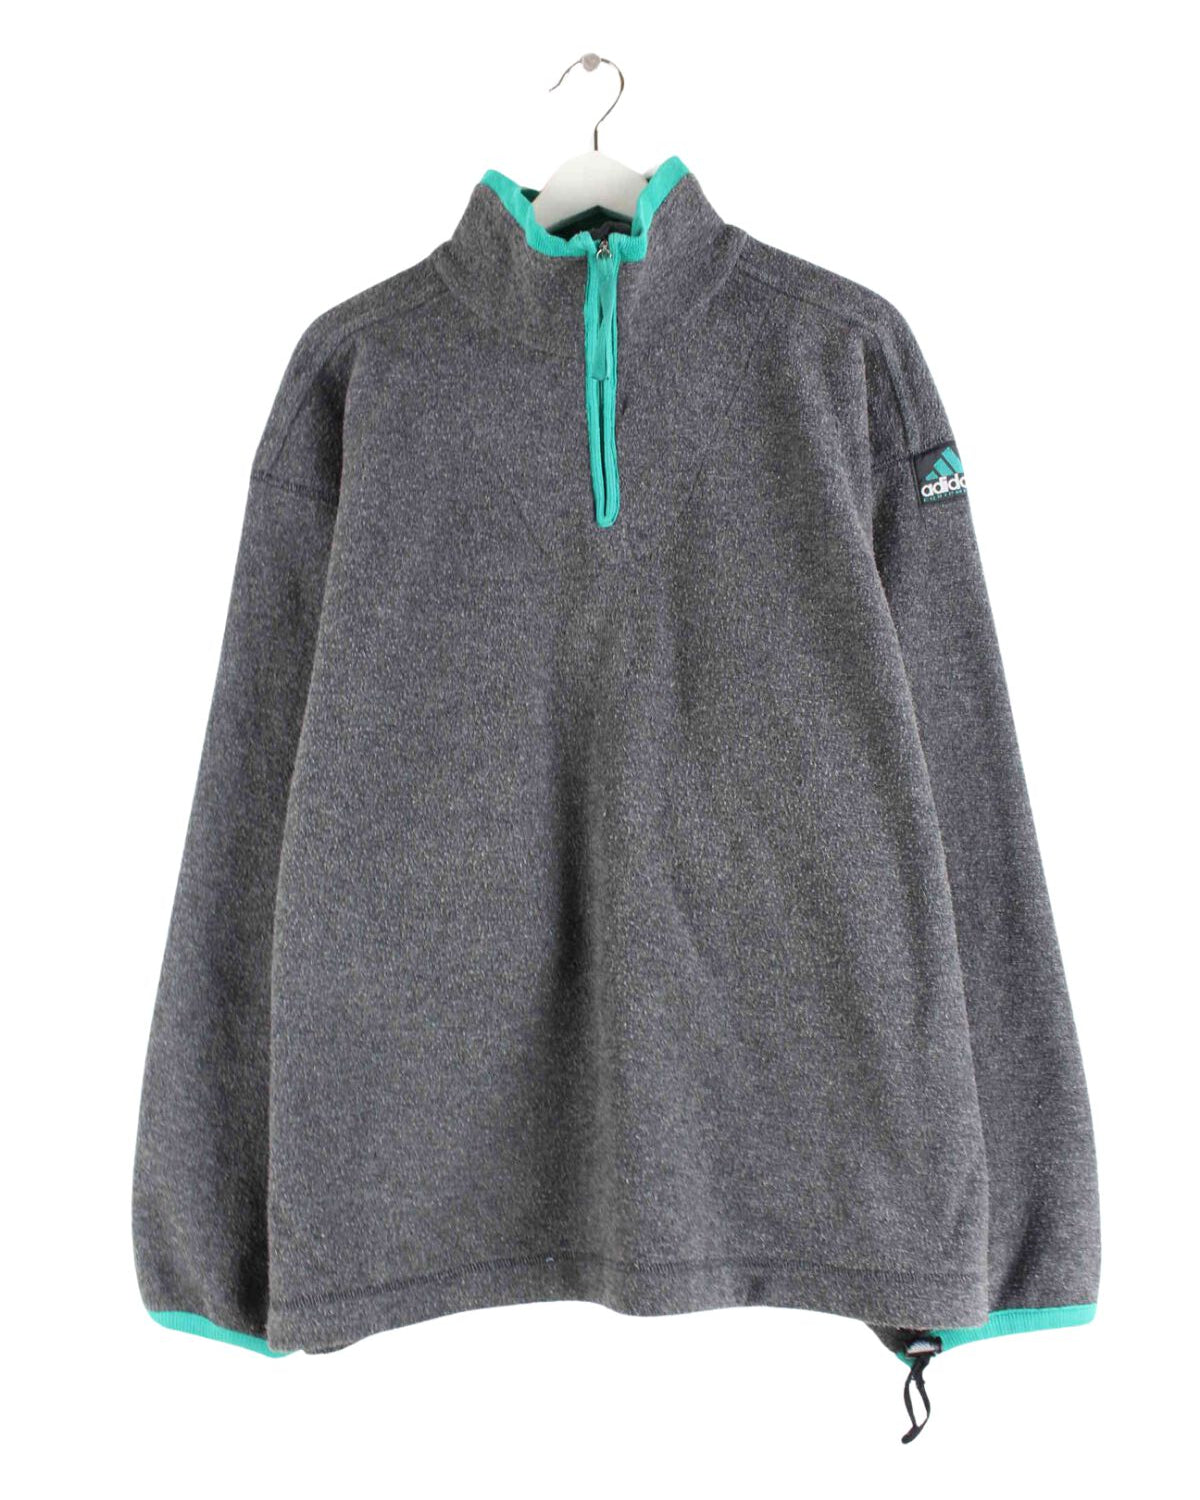 Adidas Equipment 90s Vintage Half Zip Fleece Sweater Grau XL (front image)